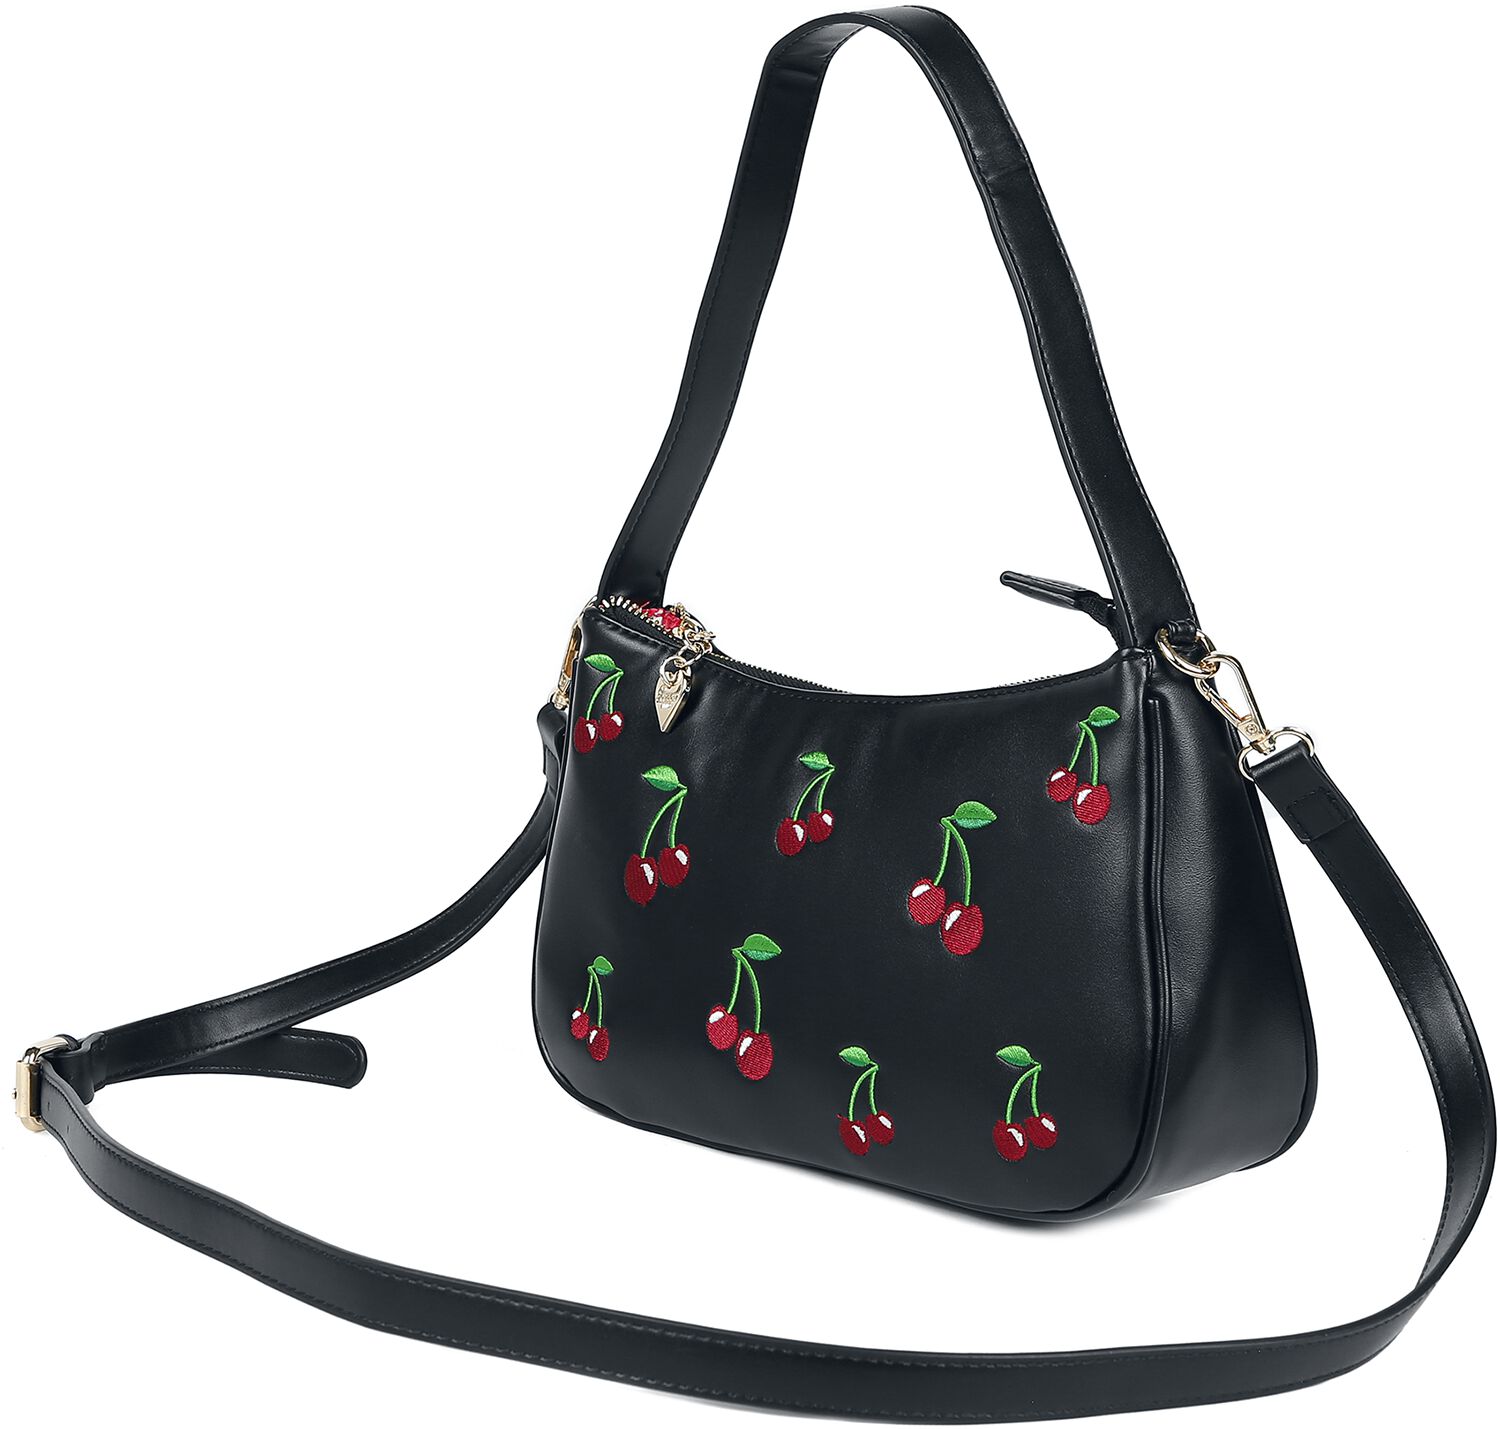 Banned Retro - Wild Cherry - Handtasche - schwarz|multicolor